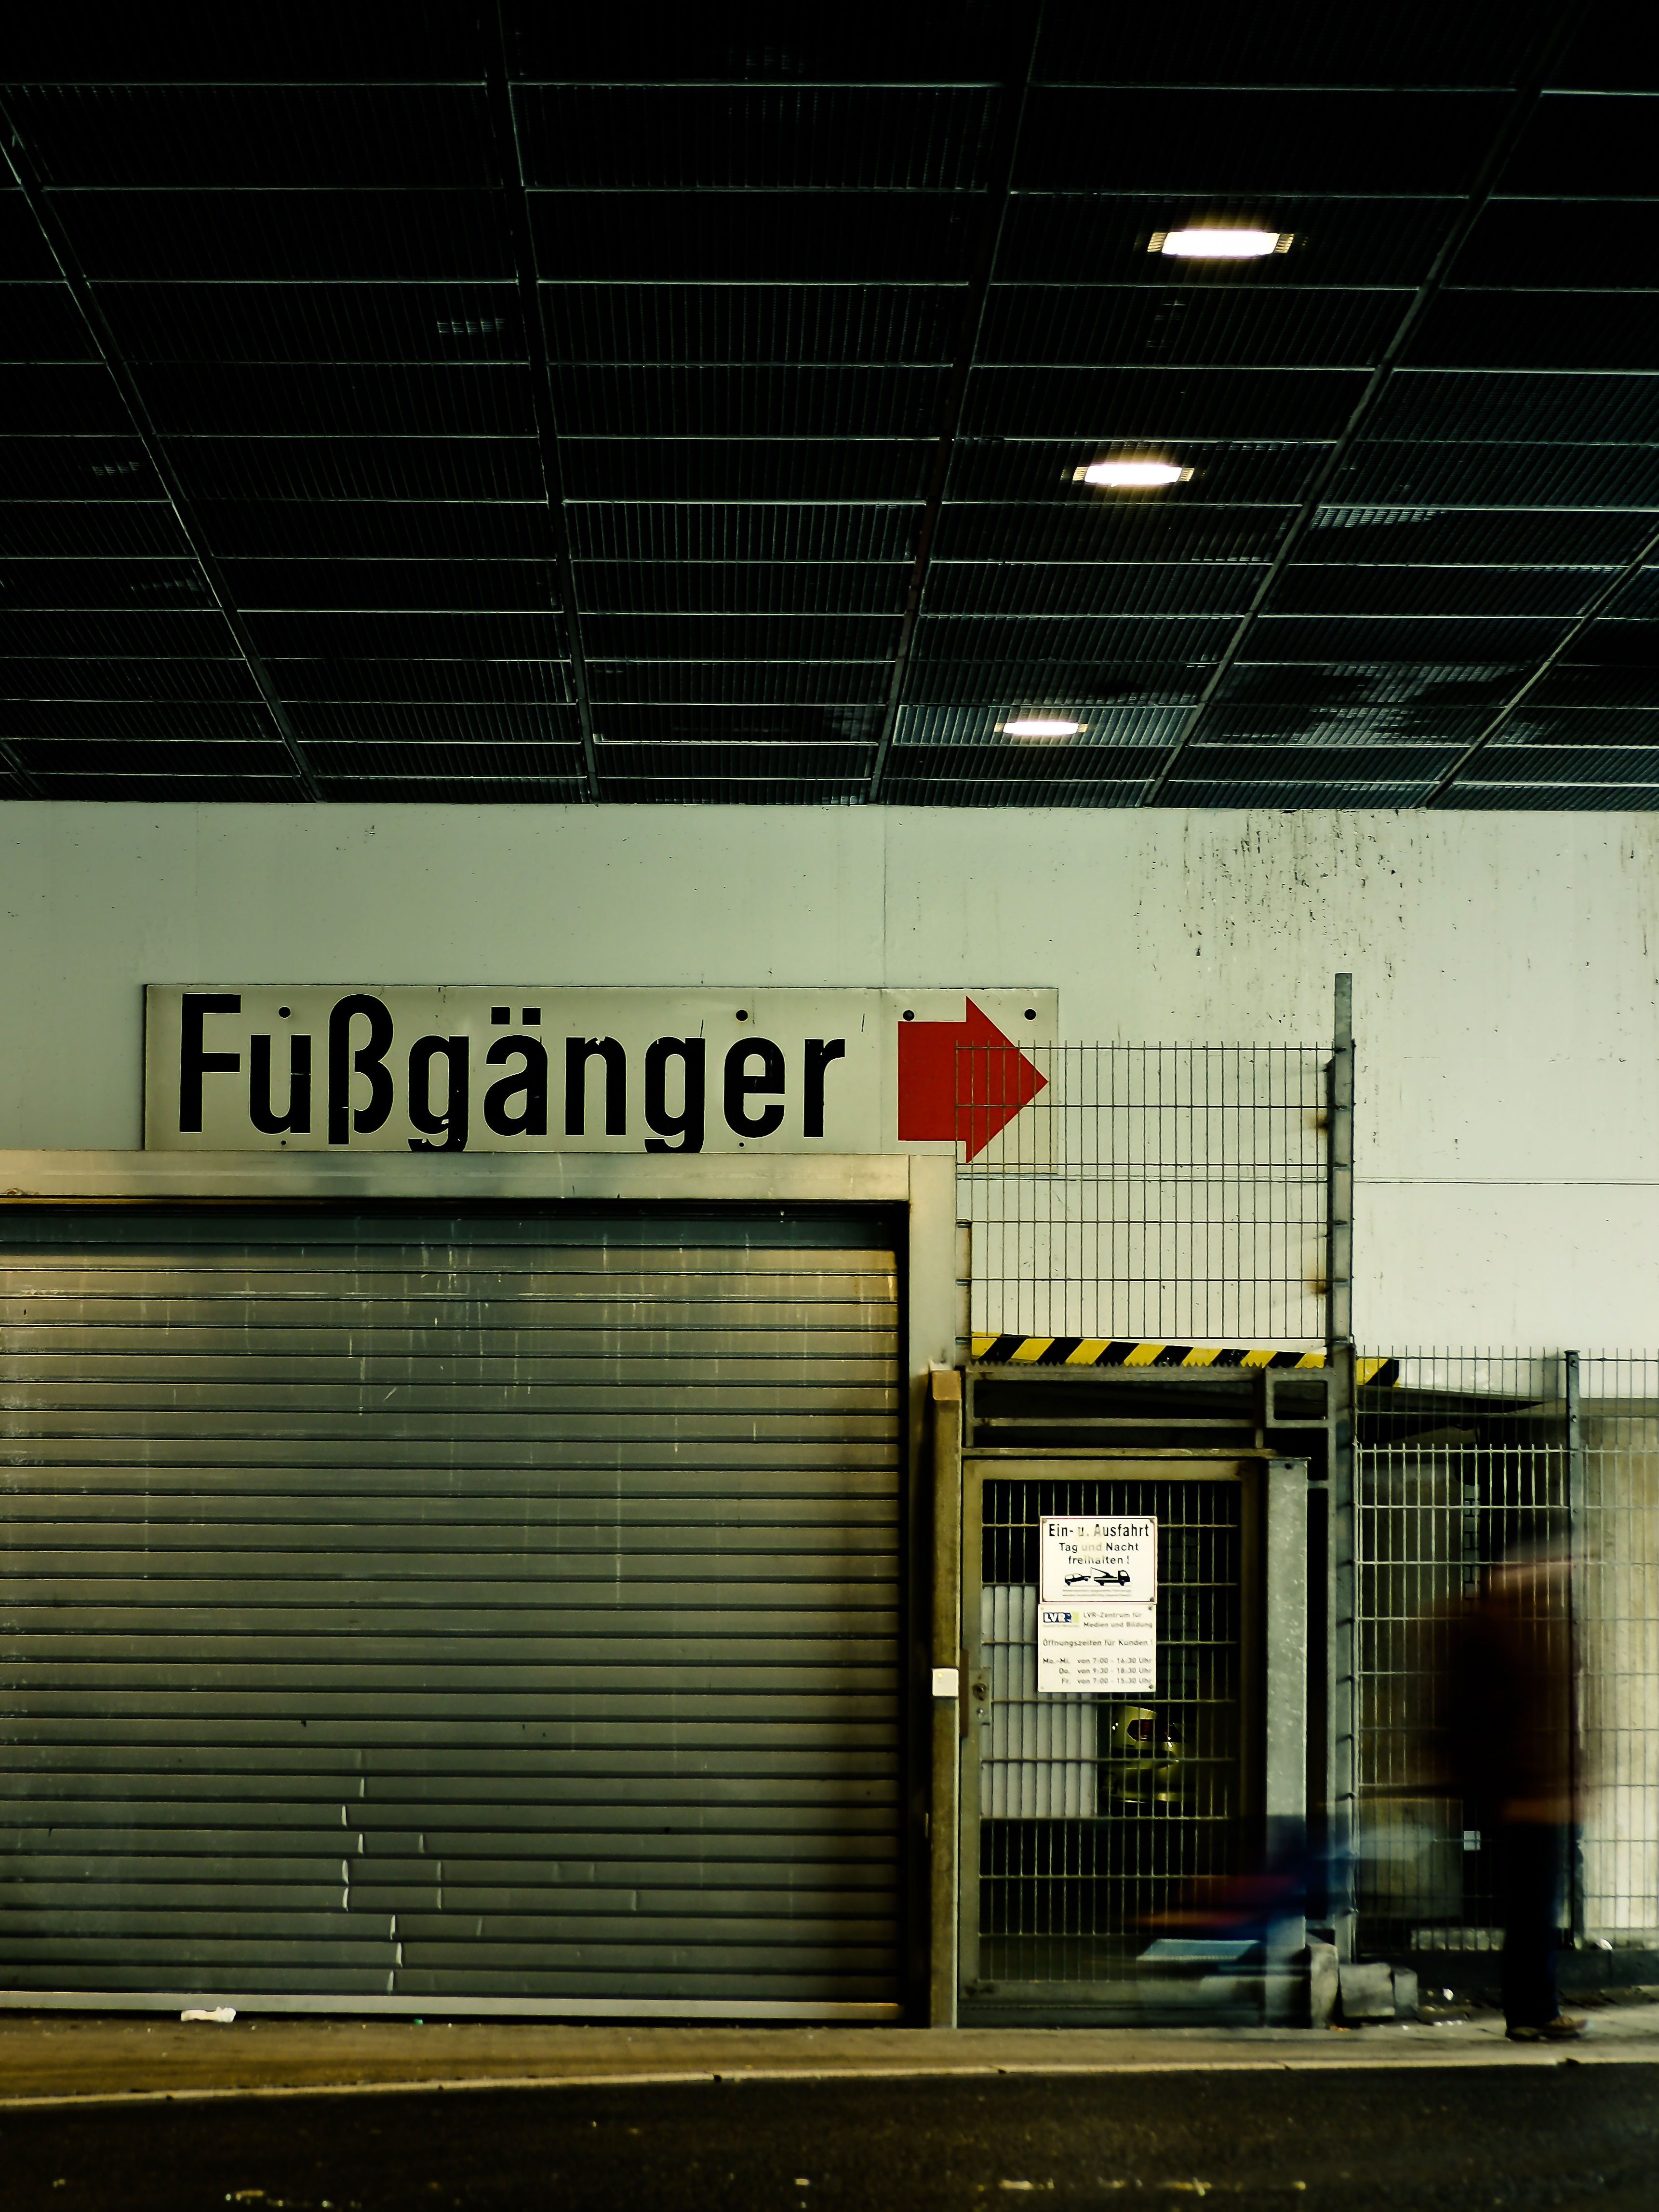 silver and black Fubanger signage